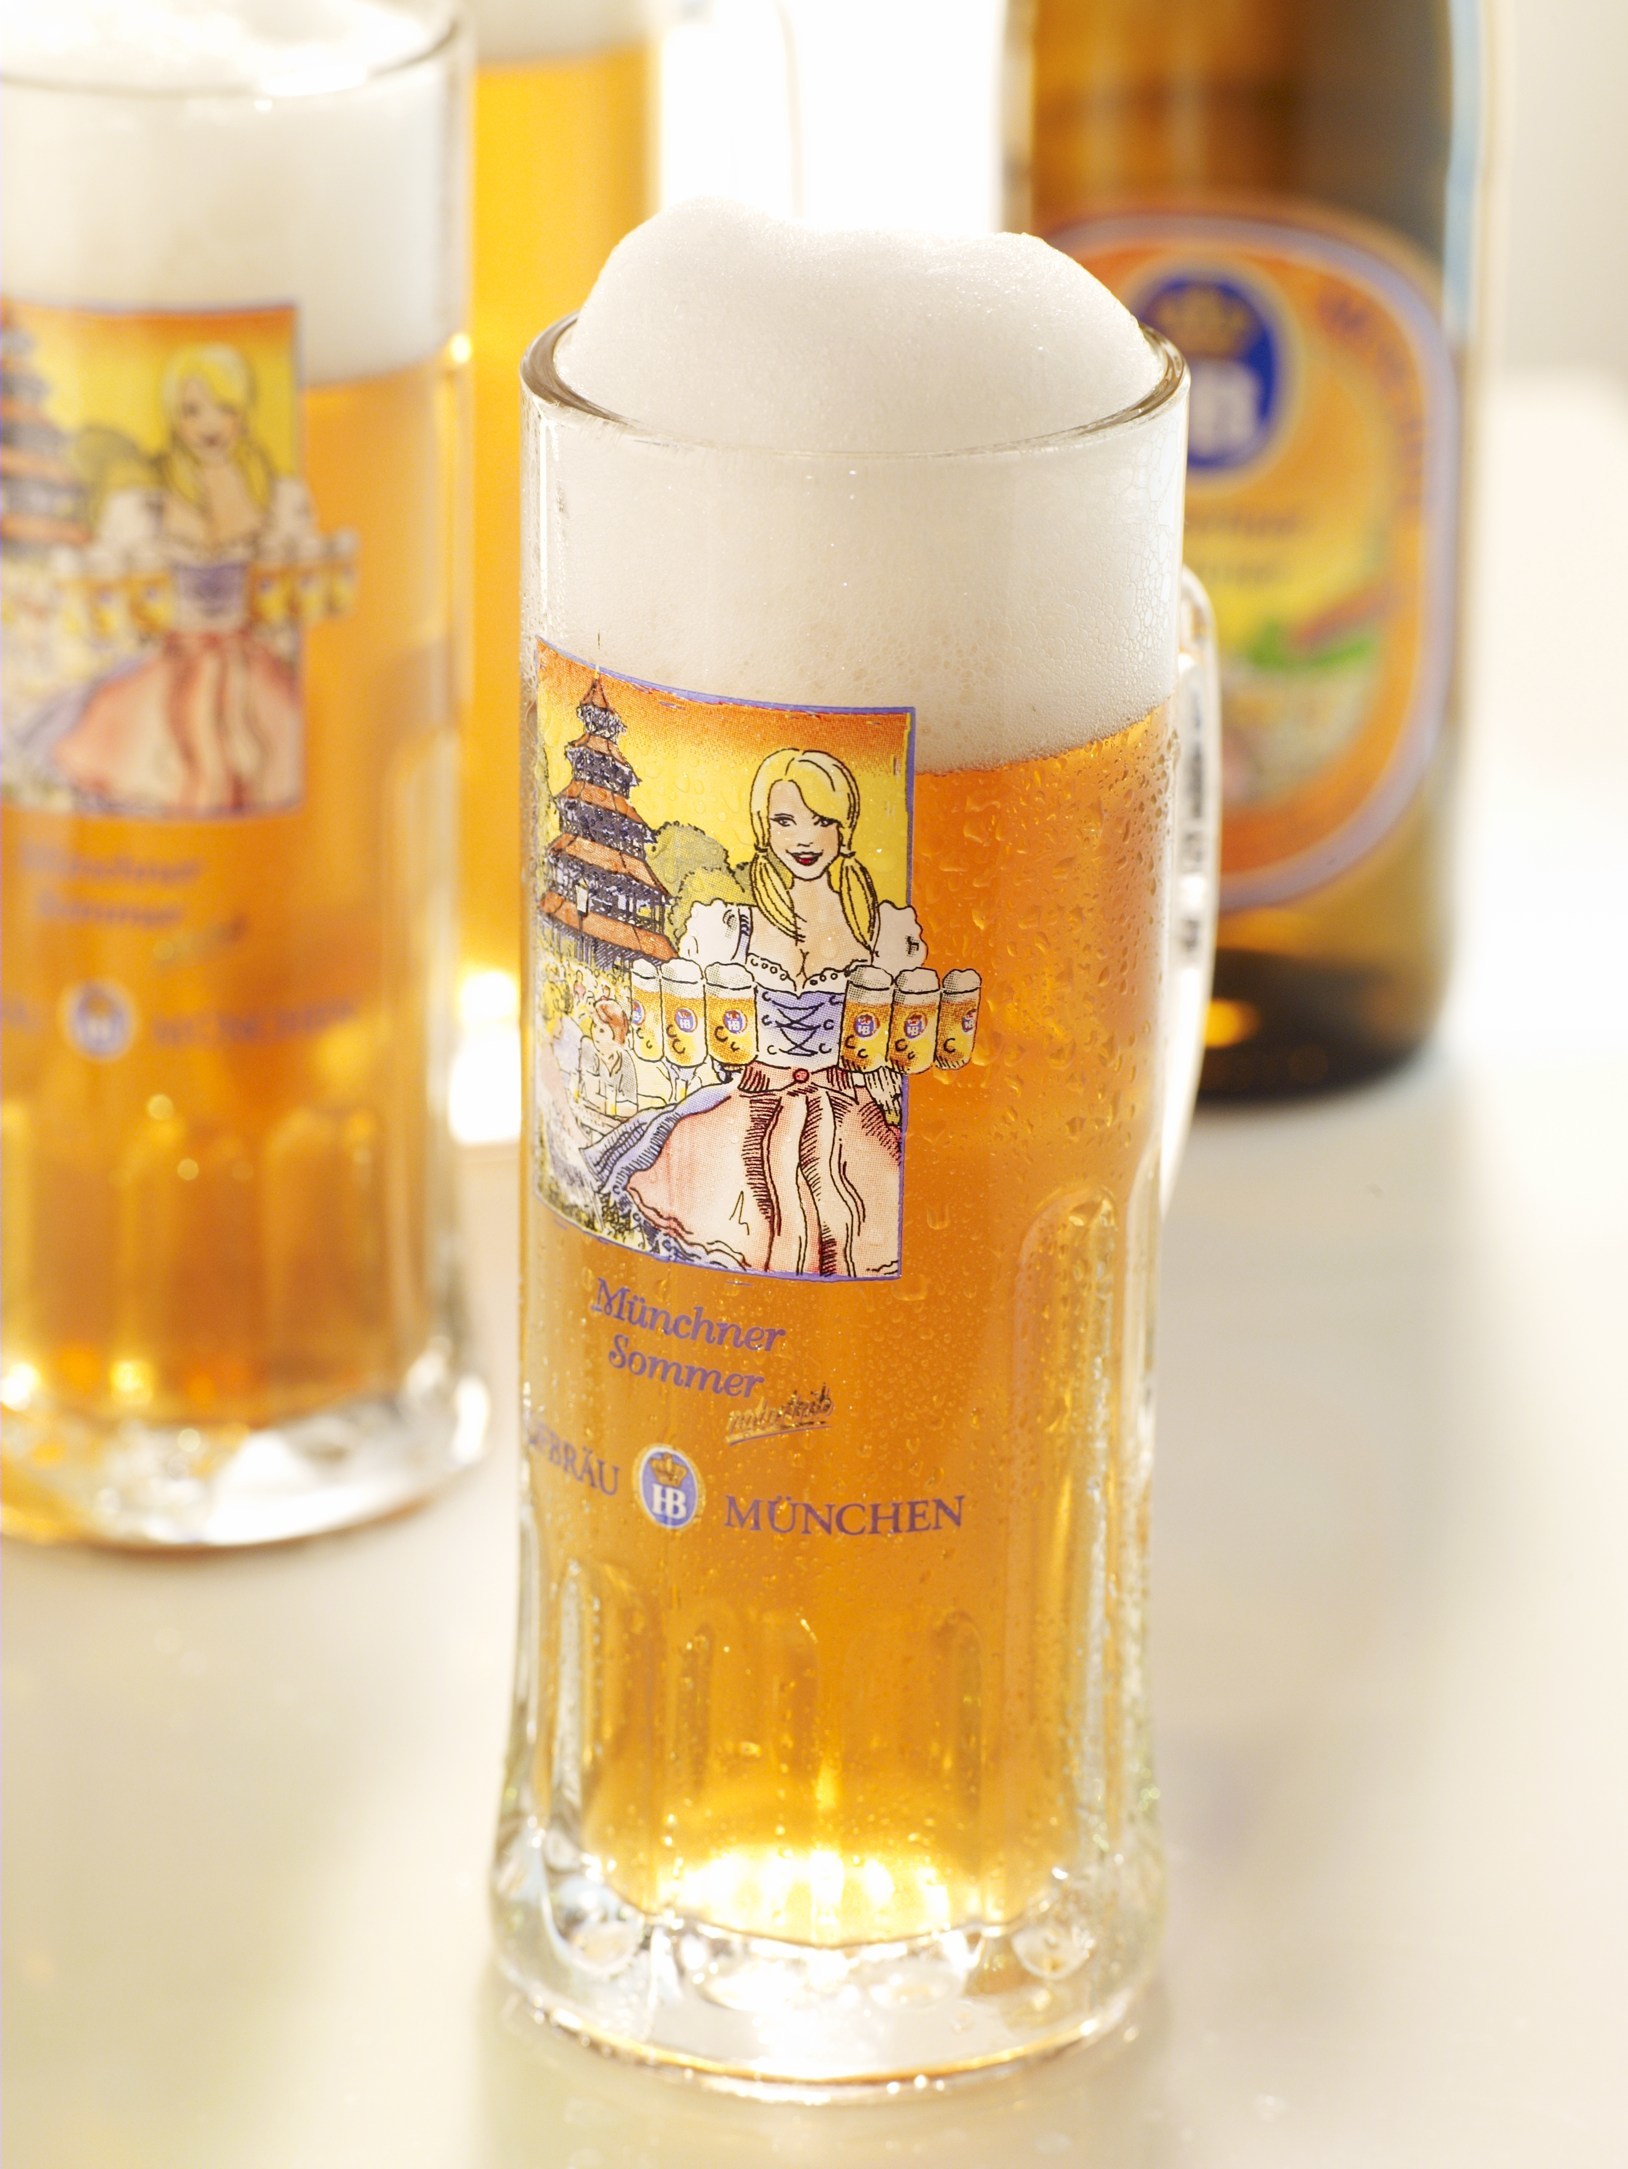 ホフブロイサマービール  本場ドイツでも年に1度の季節限定醸造で人気の高いビール。爽やかな味わい、きめ細やかな泡とオレンジ色の輝きでフルーティなアロマが特徴のラガービール。Alc.　5.1％